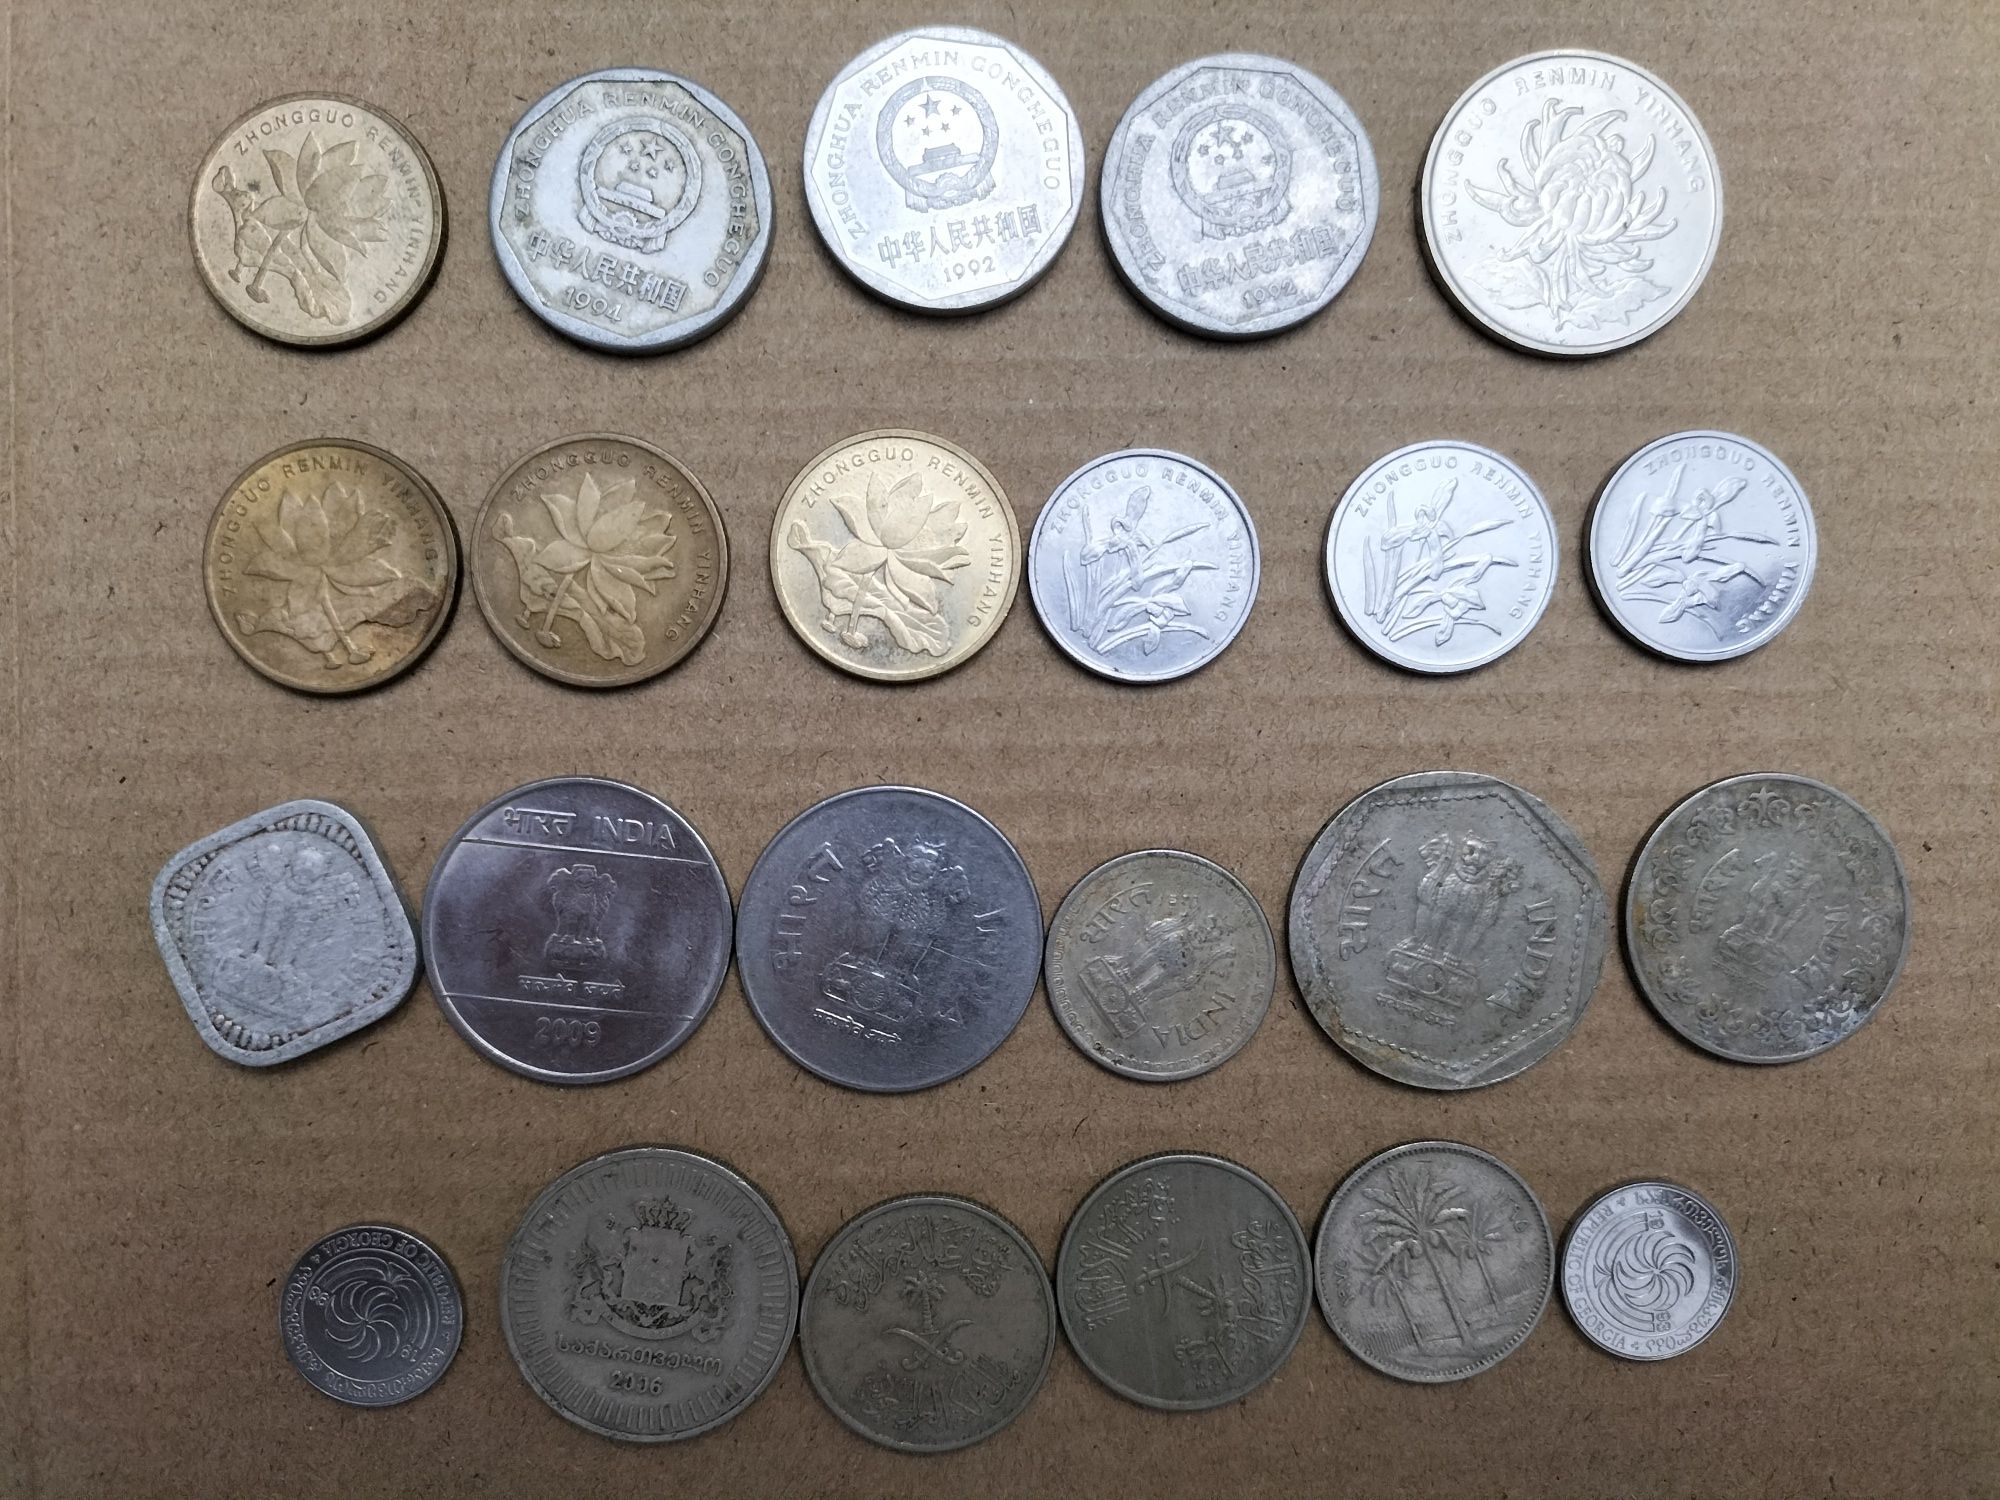 Lote de moedas Índia, China, Georgia, Iraque